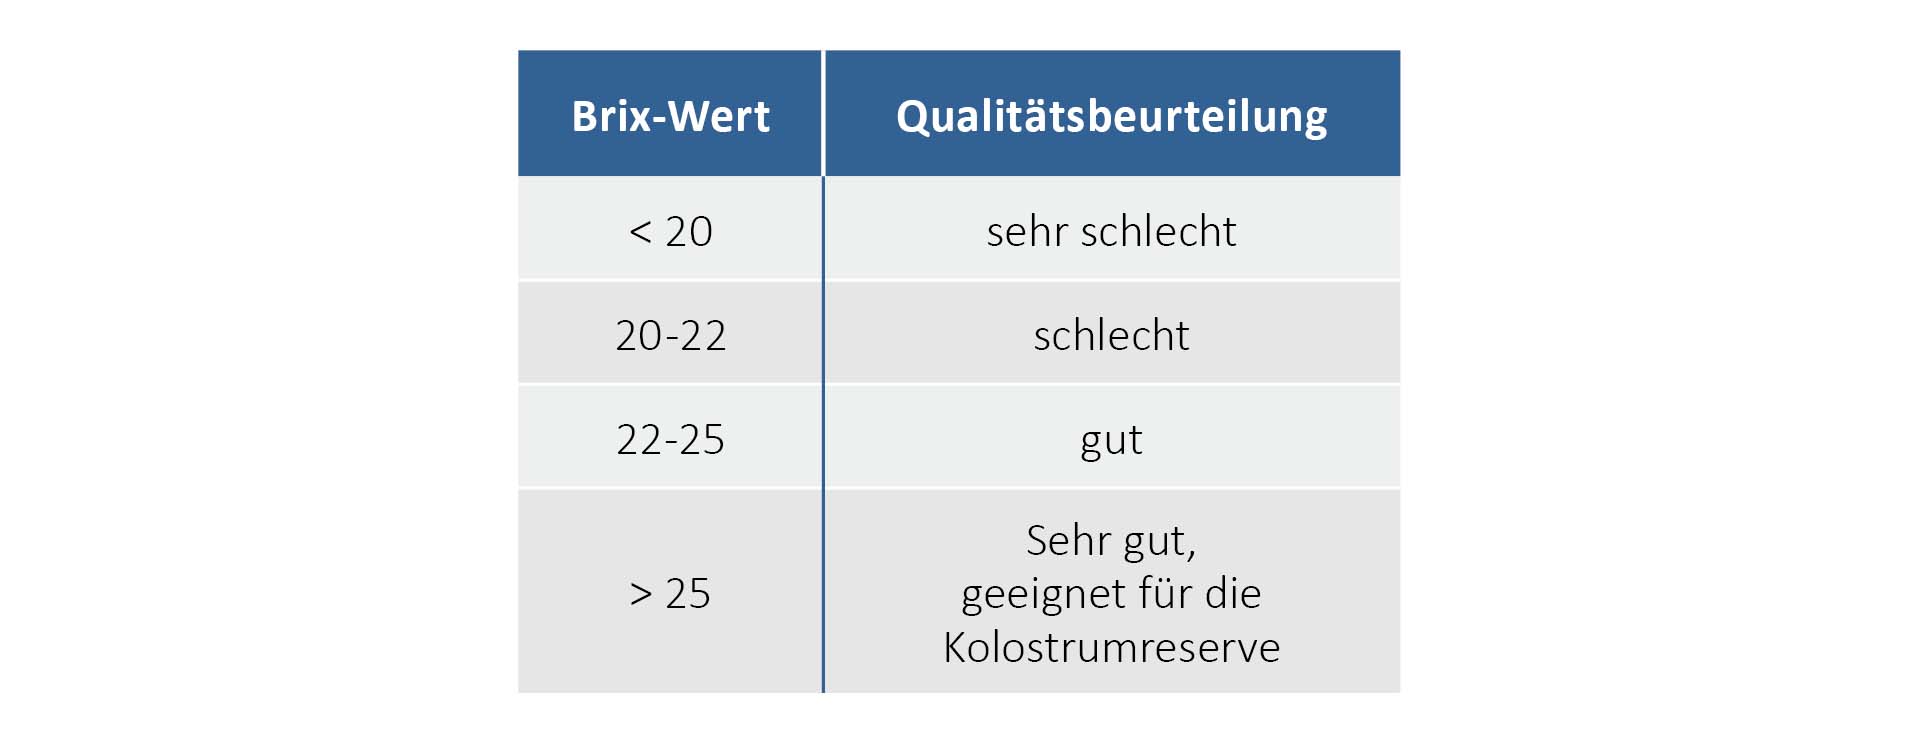 Qualitätsbeurteilung von Kolostrum anhand des Brix-Wertes